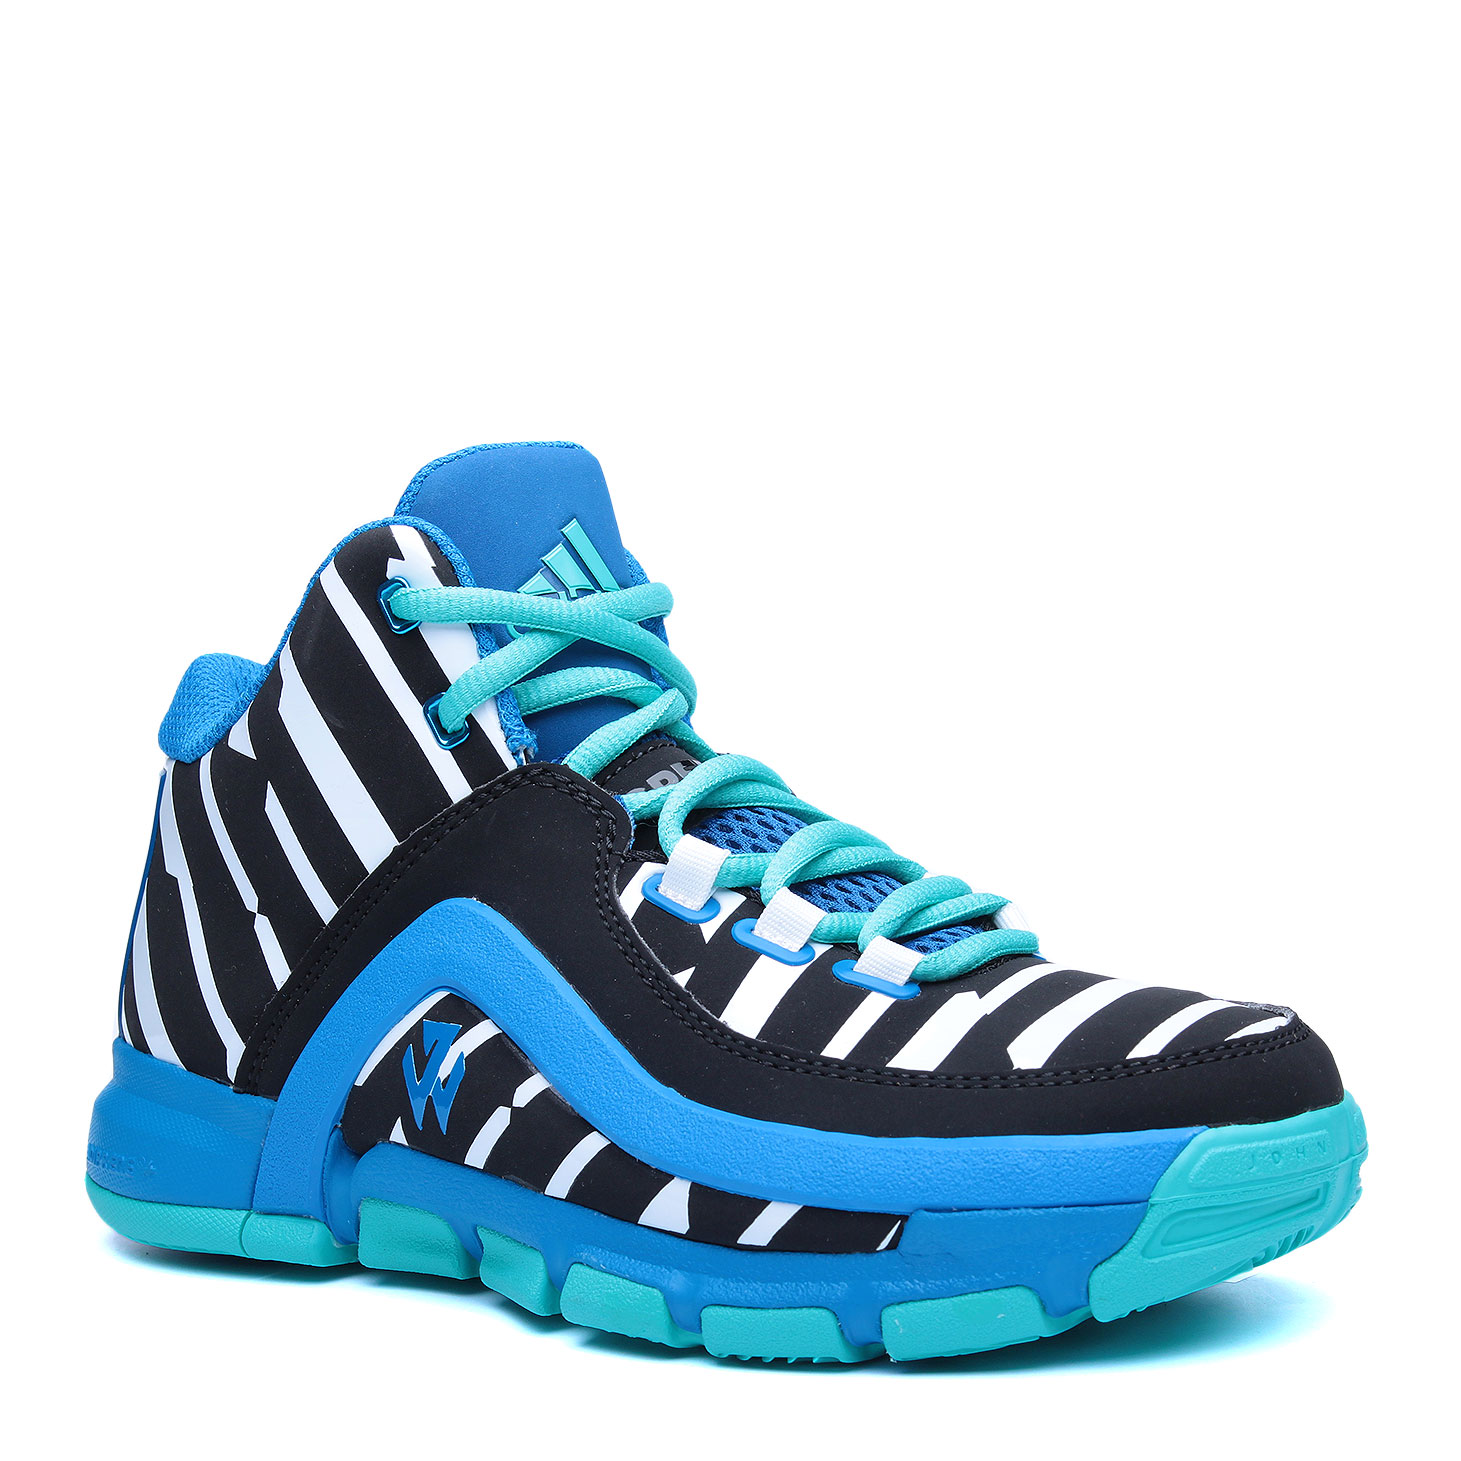 детские голубые баскетбольные кроссовки adidas J Wall 2 J AQ8727 - цена, описание, фото 1